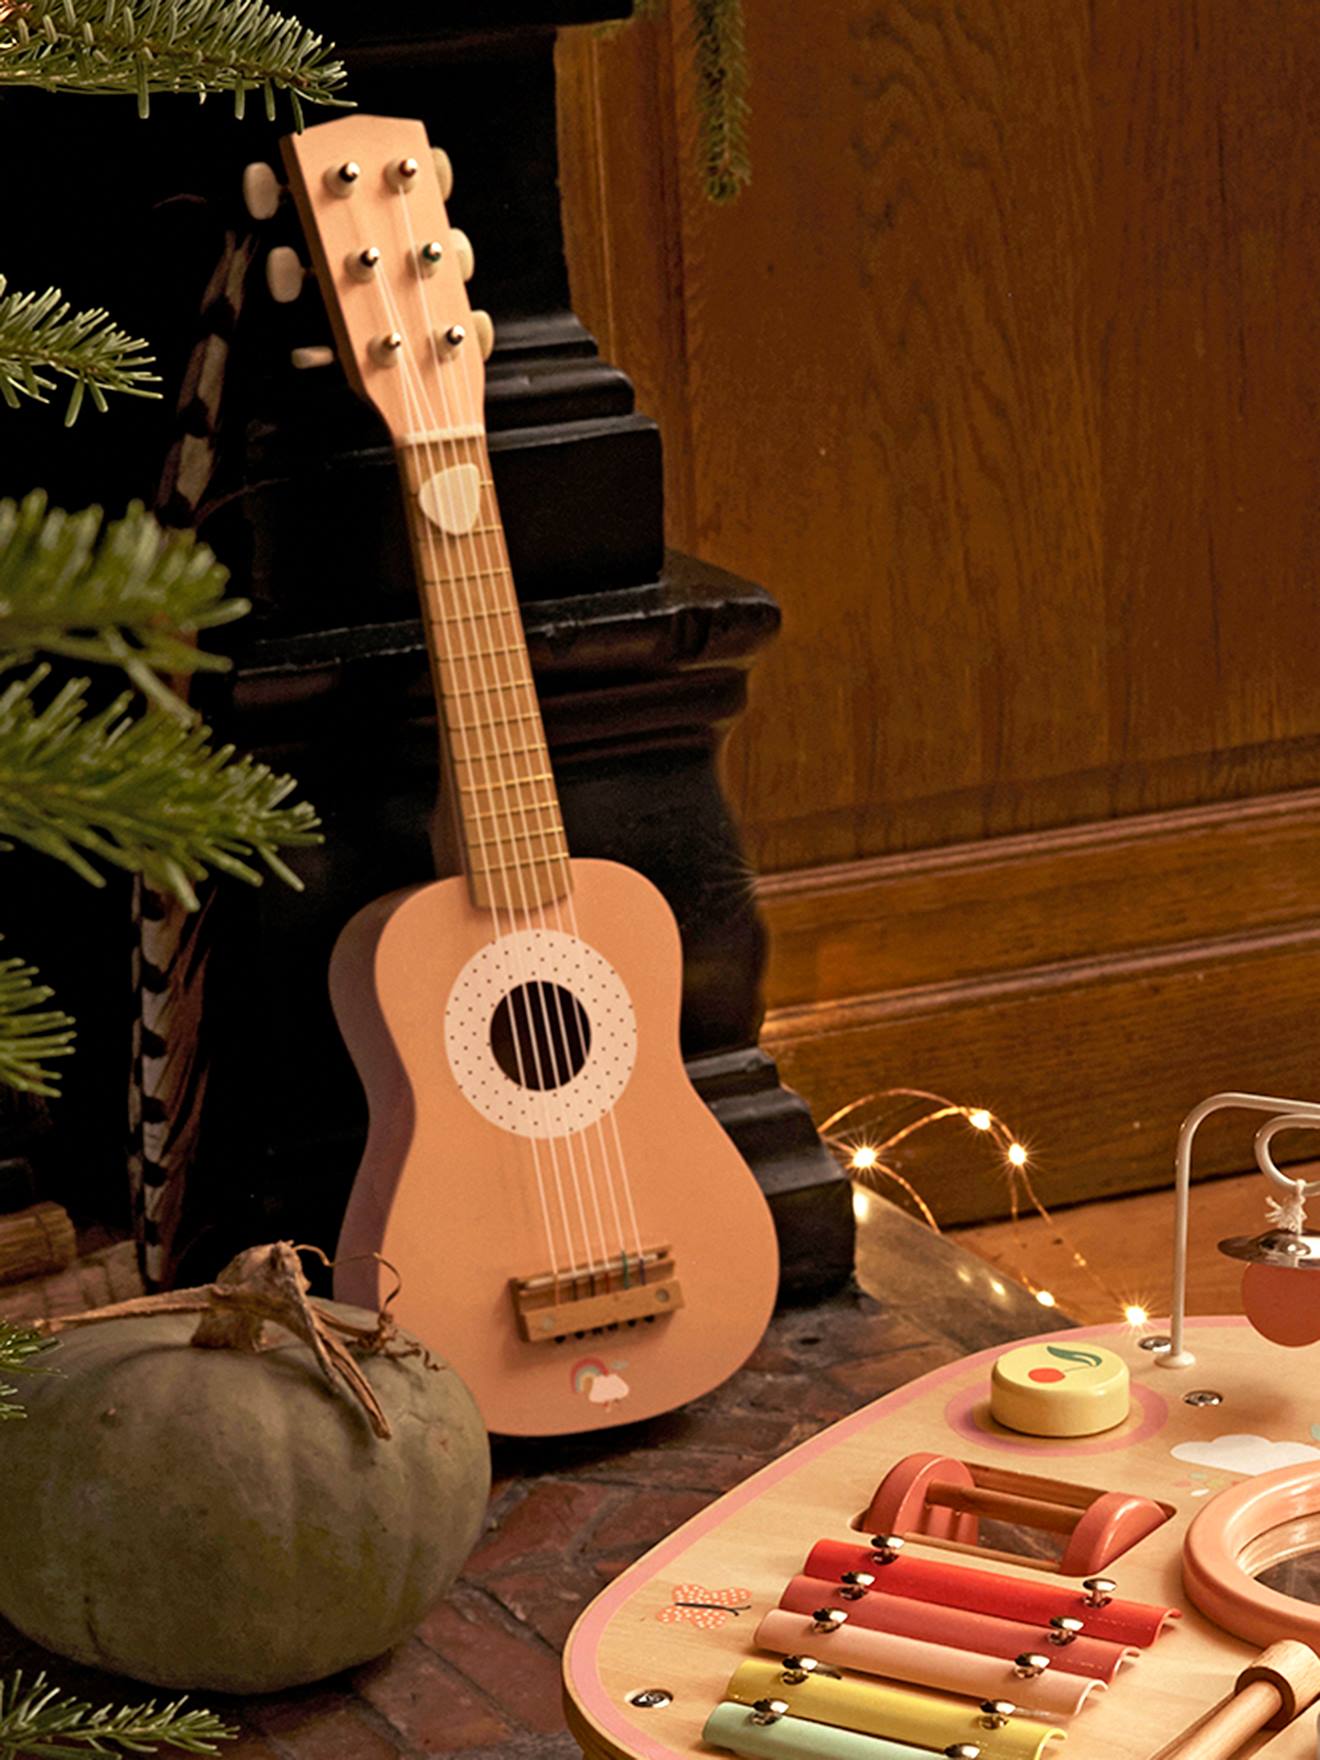 Guitare enfant personnalisée en bois - 6 cordes